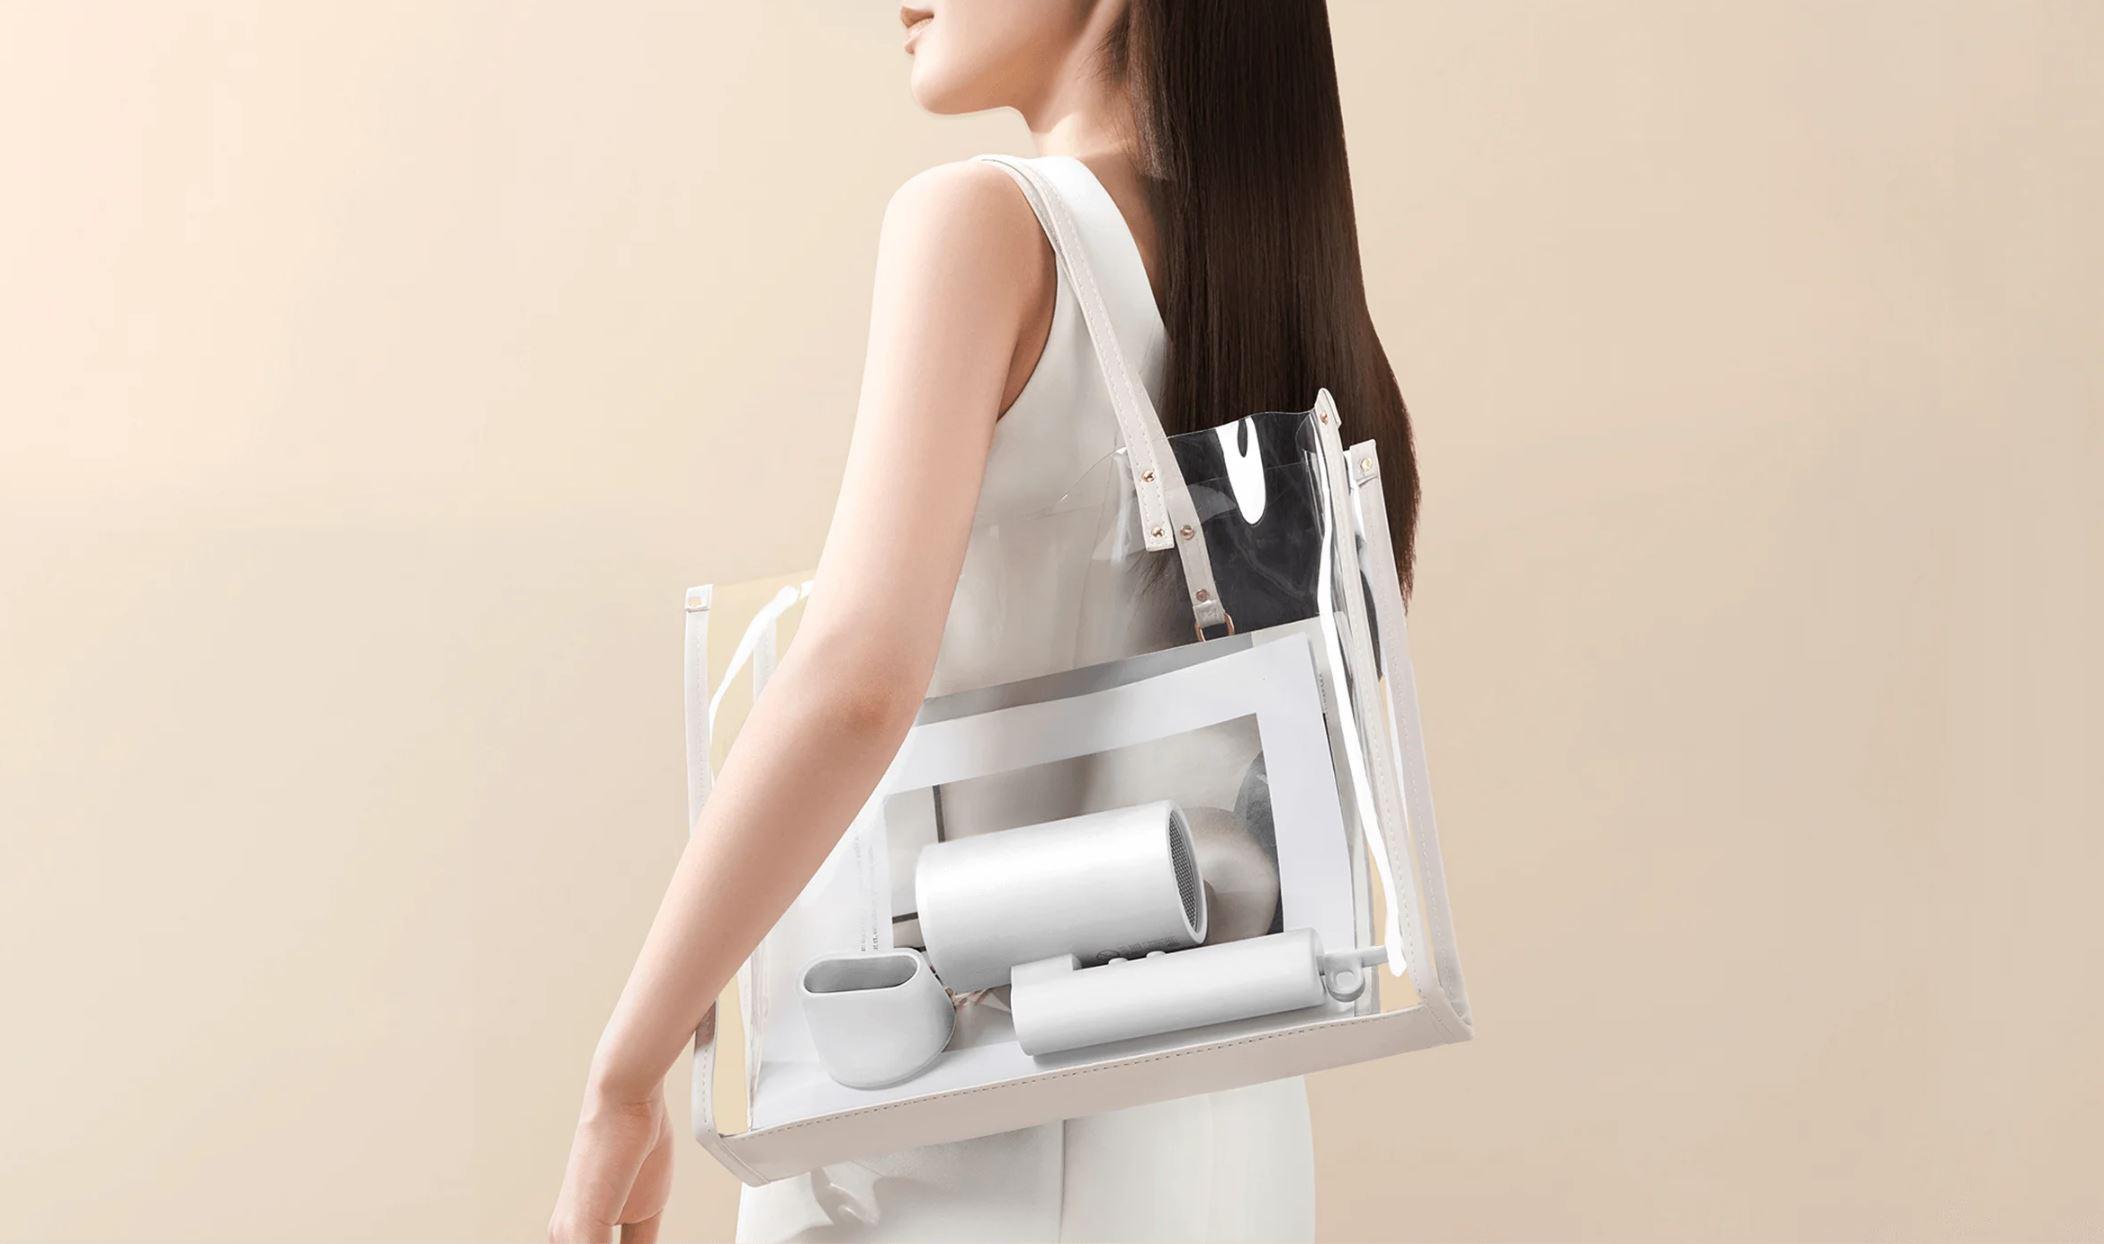 Xiaomi Compact Hair Dryer H101 Wite - suszarka do włosów, która ekspresowo wysuszy Twoje włosy bez uszkadzania!